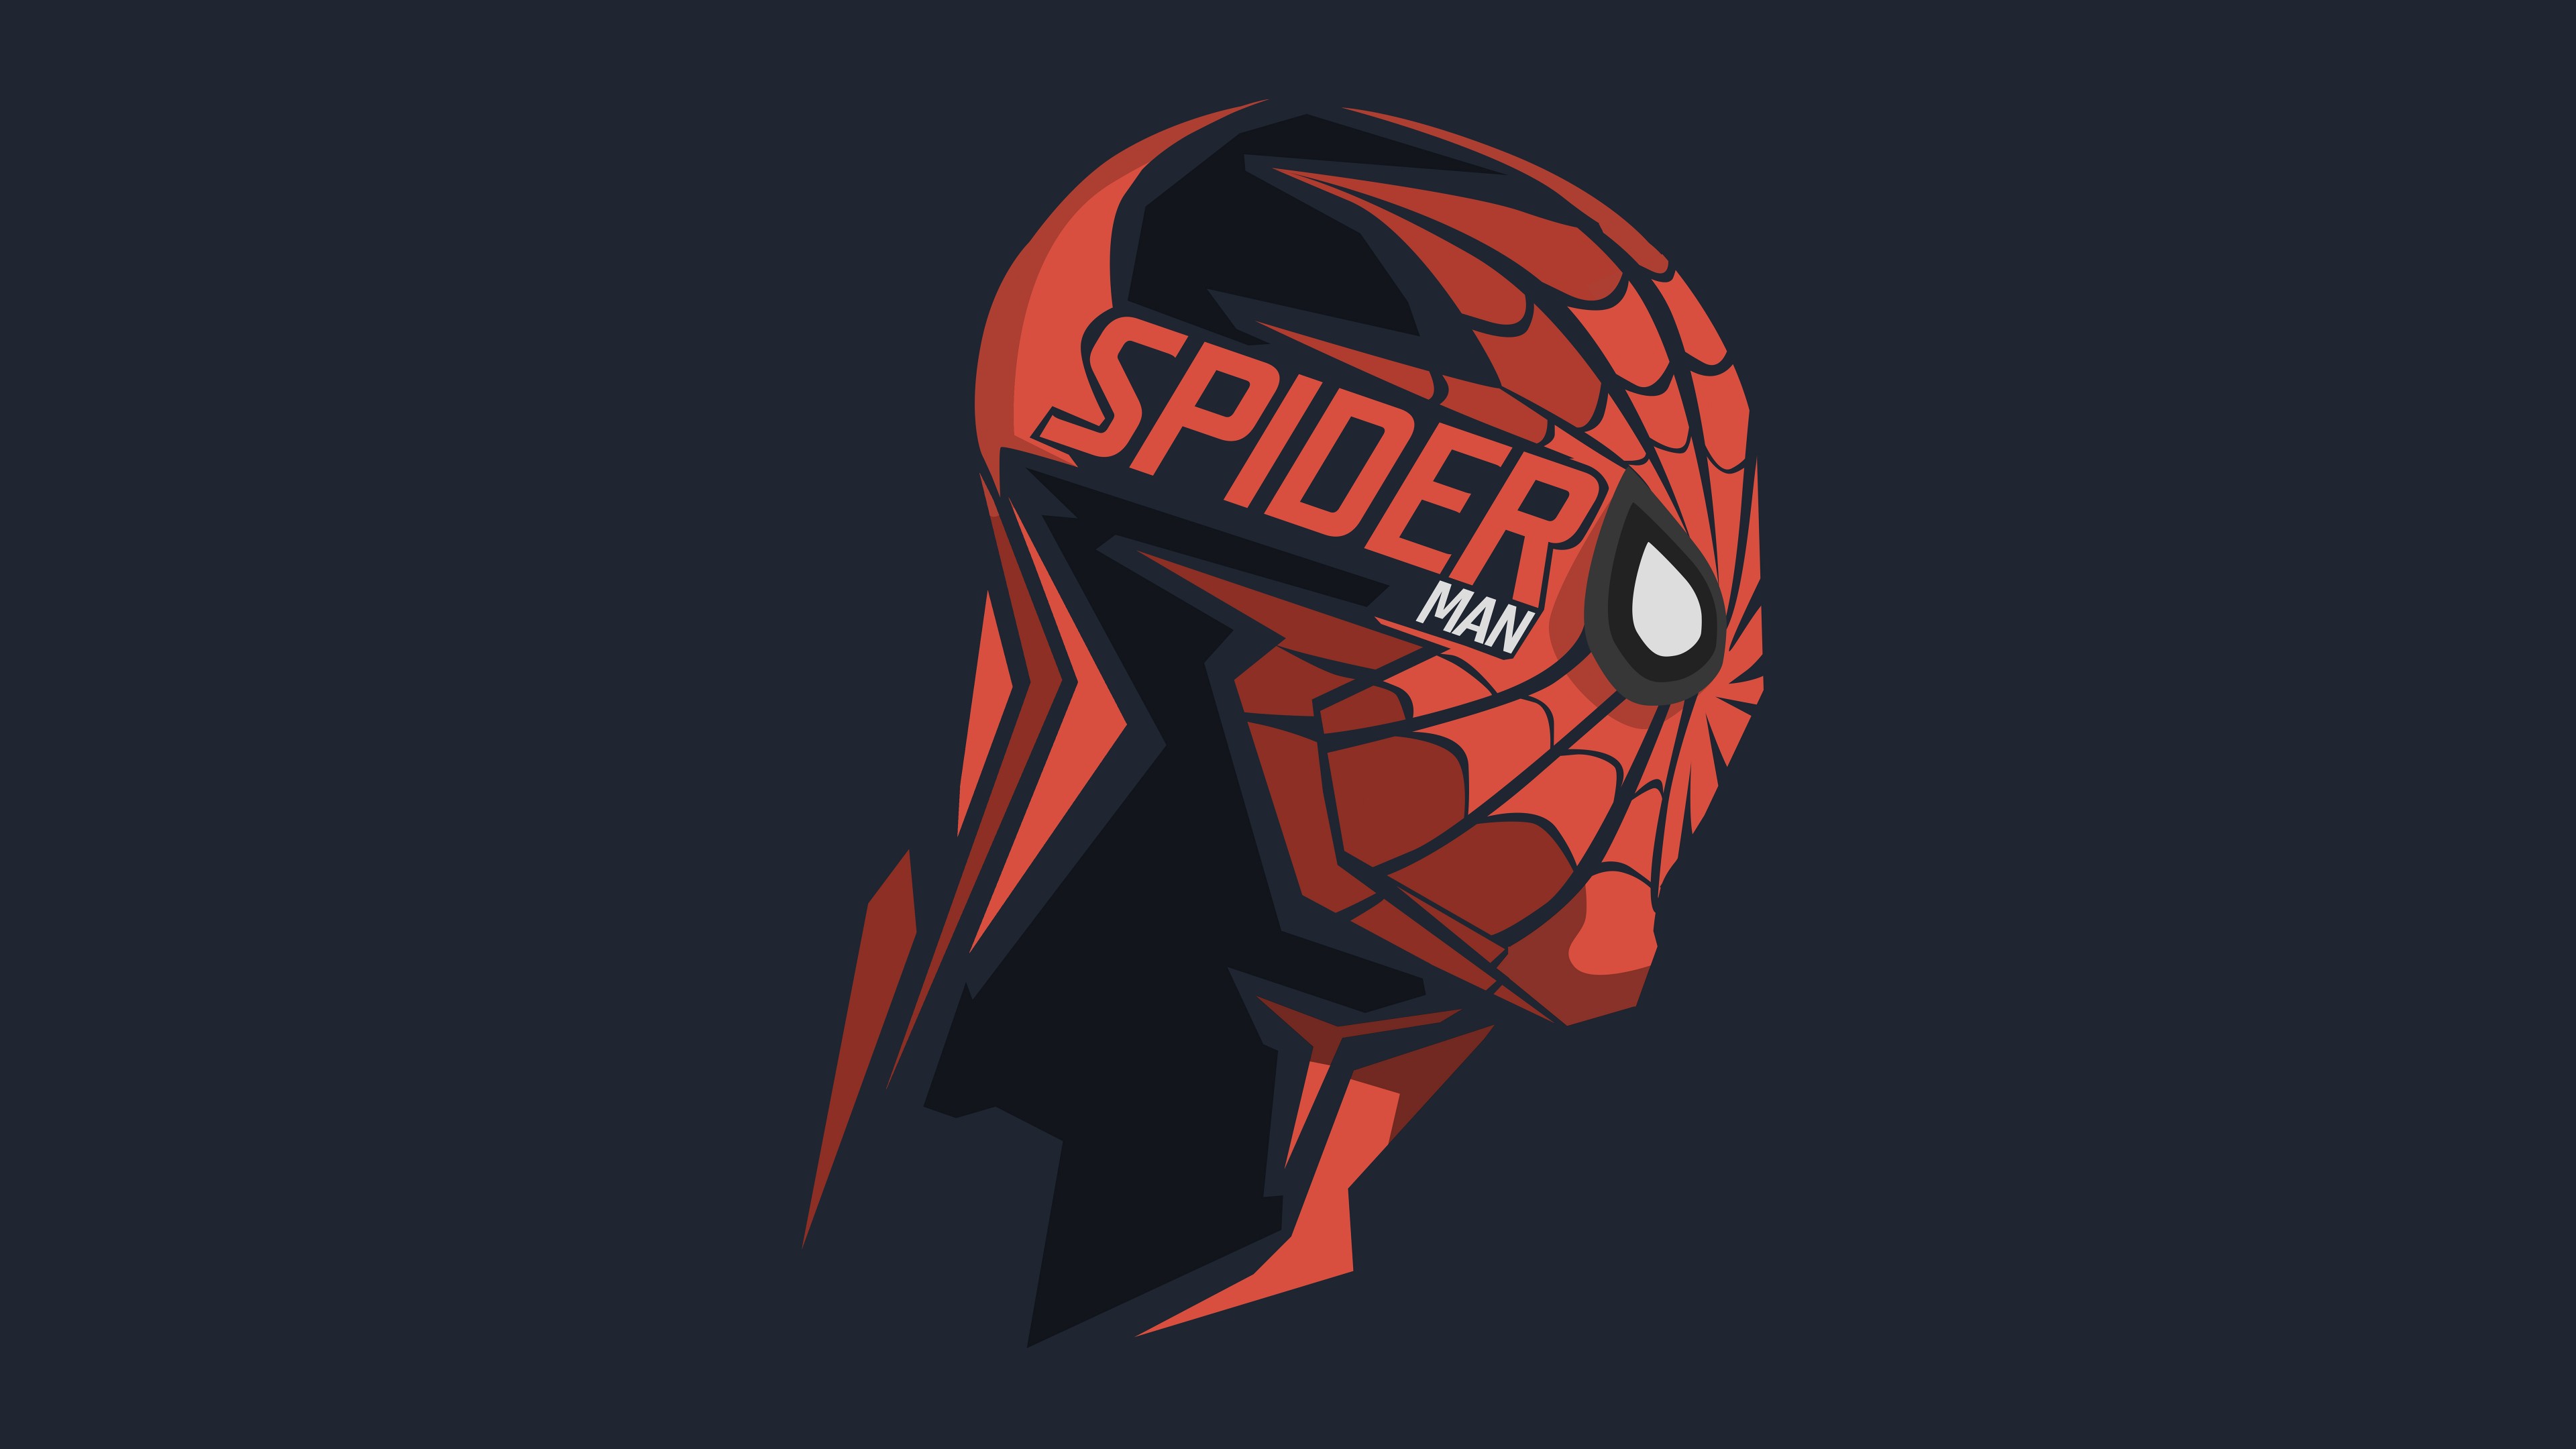 fond d'écran spiderman hd,casque,illustration,personnage fictif,équipement de sport,conception graphique